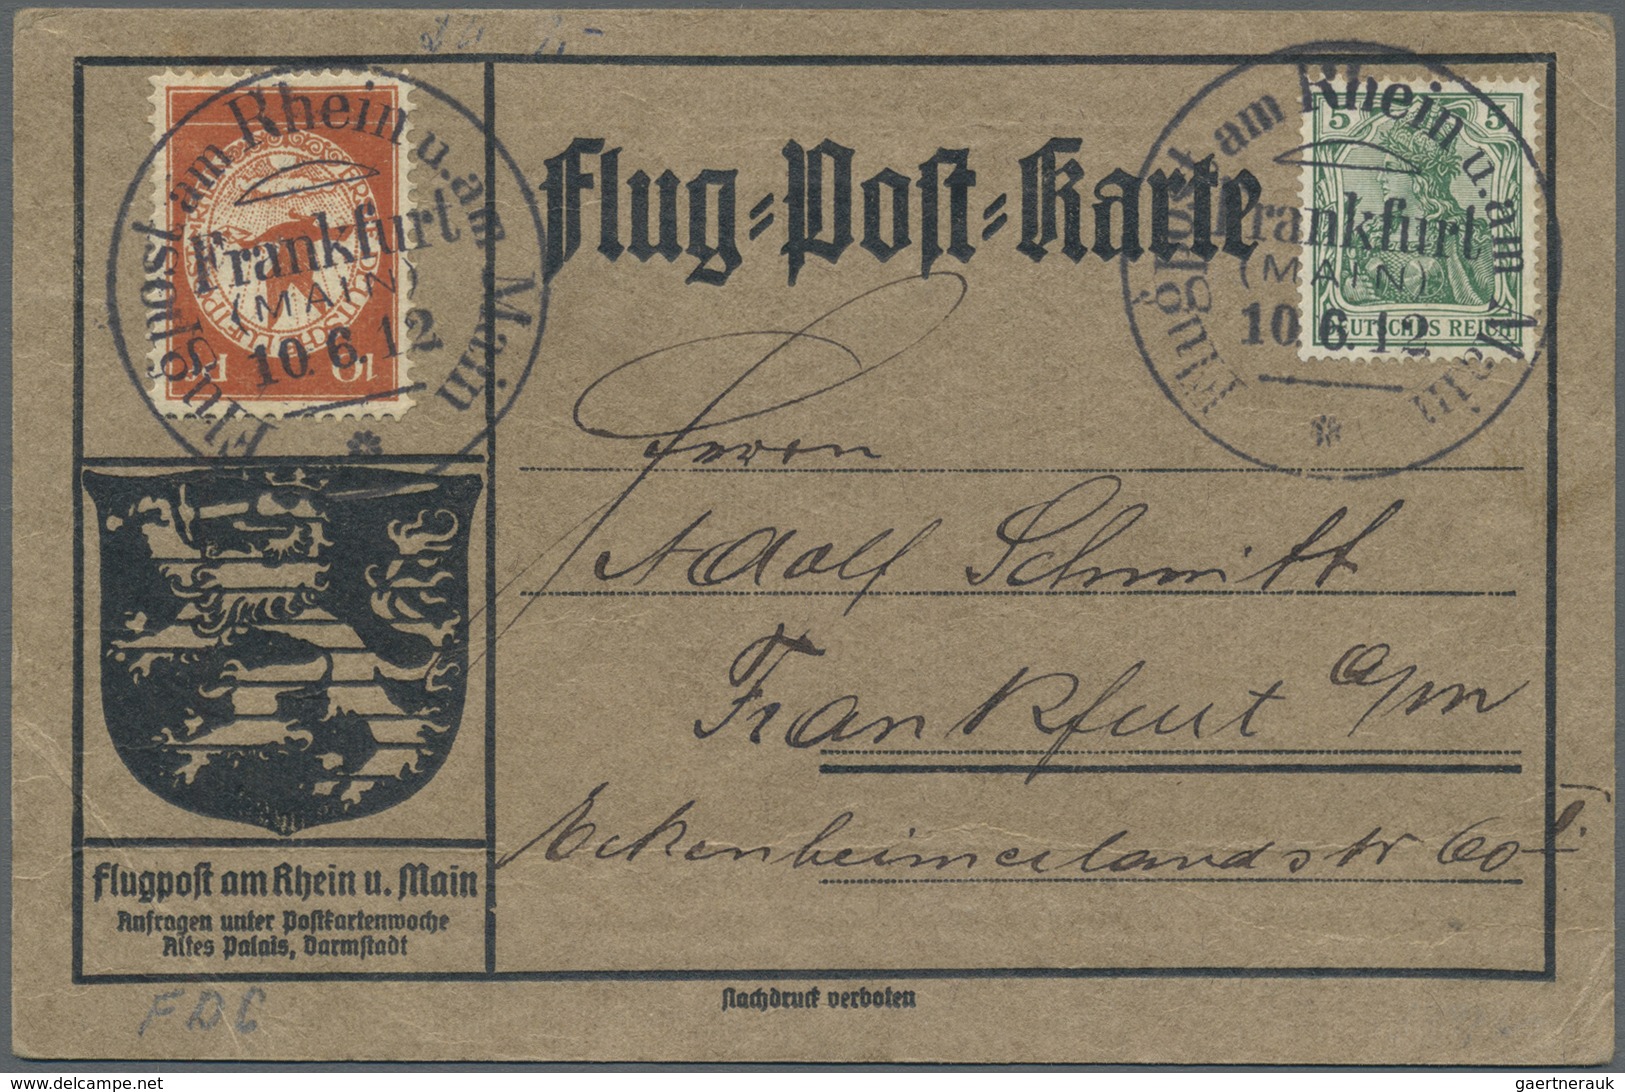 Br Deutsches Reich - Germania: 1912, Flugpost Rhein/Main, offizielle Flugpostkarten ab Frankfurt (Main)